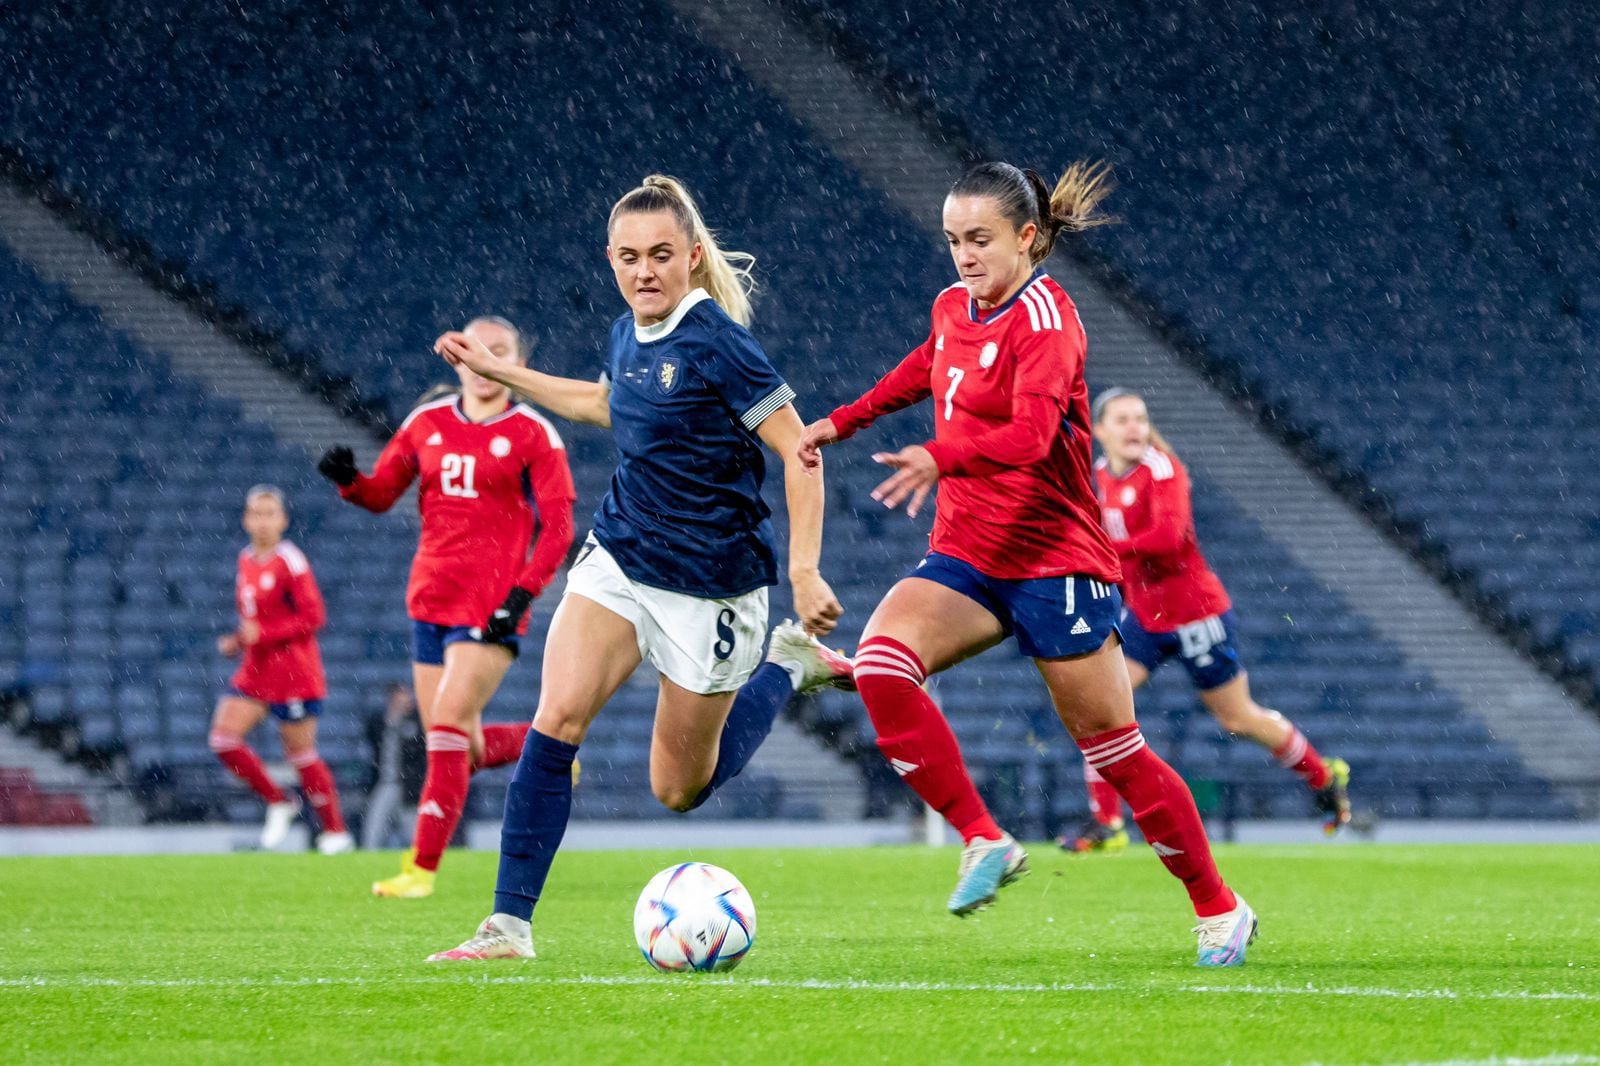 La Selección Femenina de Costa Rica cerró sus partidos de preparación con otra derrota. Antes del debut mundialista tendrá un ensayo más, cuando esté en el campamento.